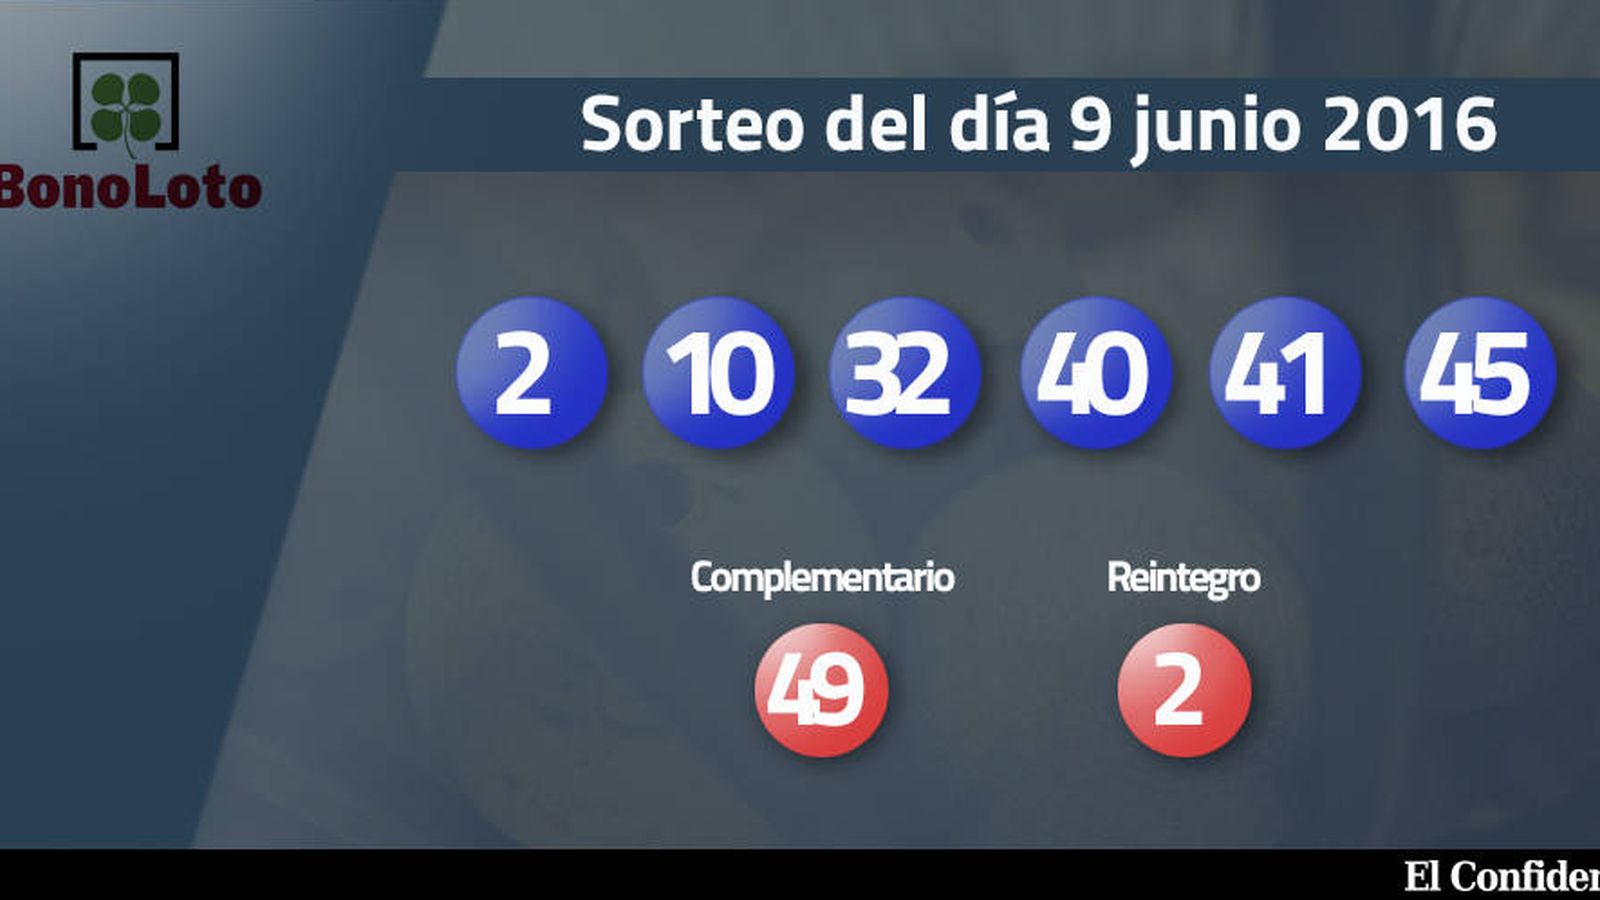 Foto: Resultados del sorteo de la Bonoloto del 9 junio 2016 (EC)